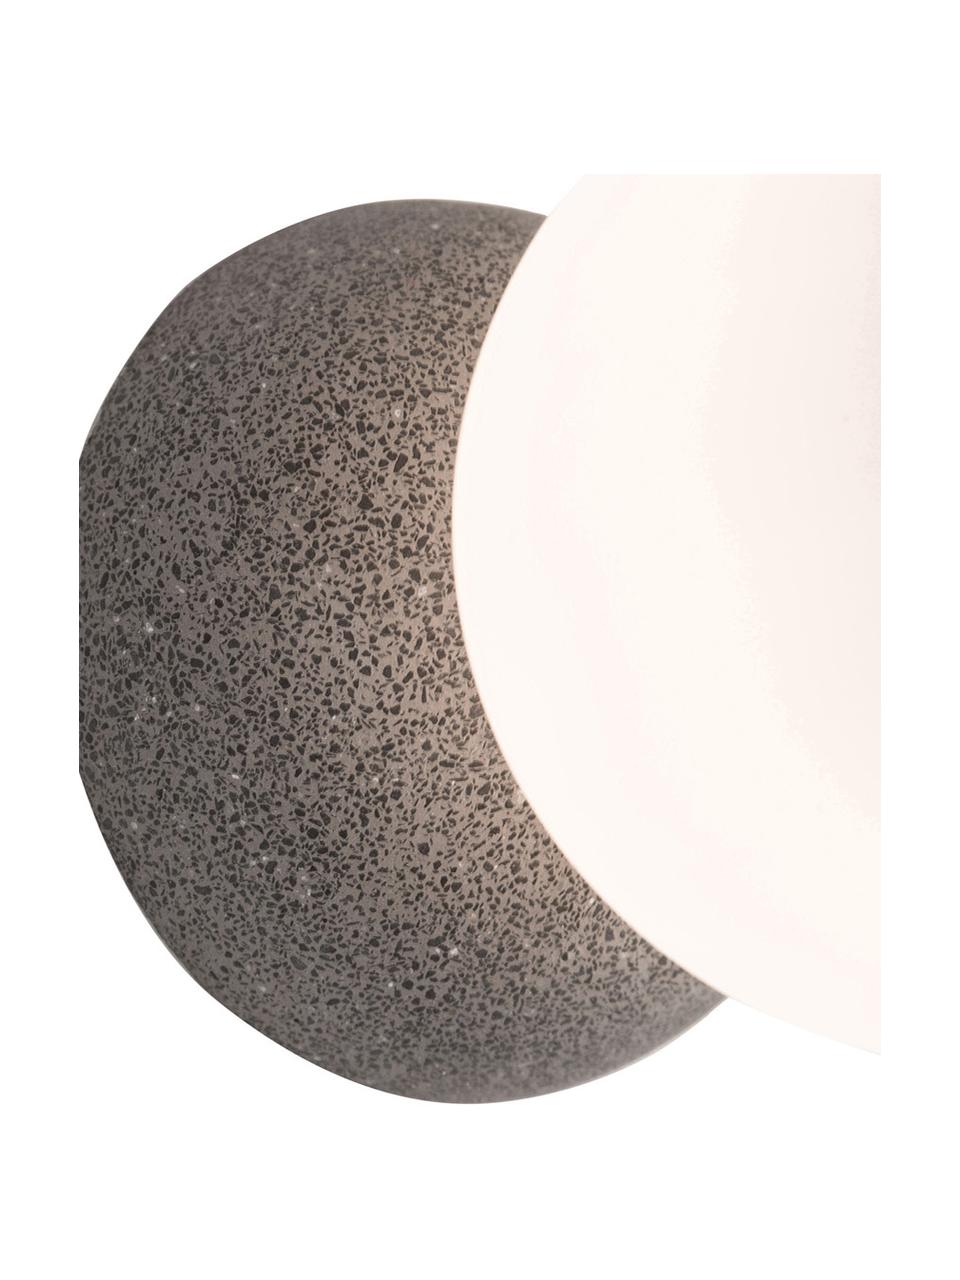 Kinkiet/lampa sufitowa z betonu Zero, Szary, biały, Ø 10 x G 14 cm